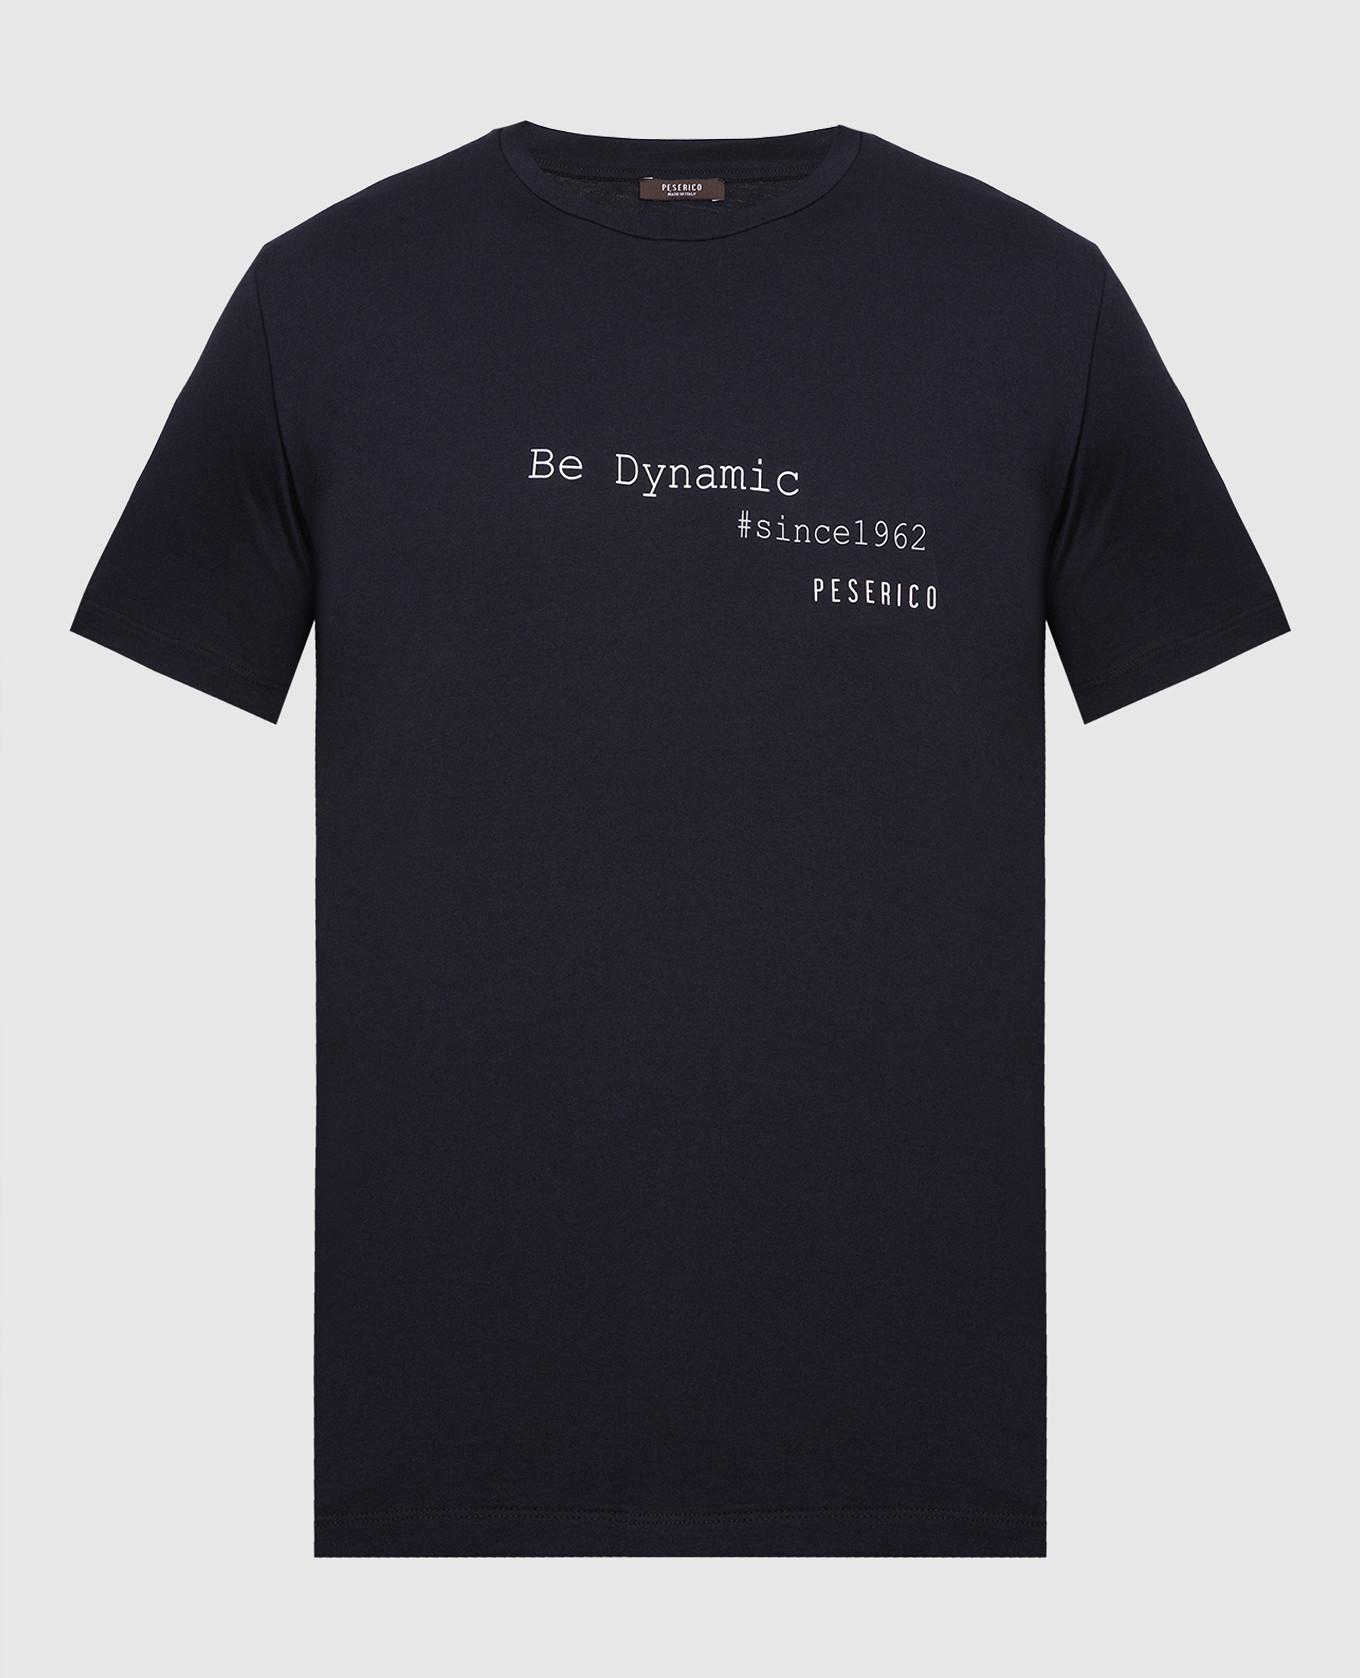 Navy blue printed T-shirt